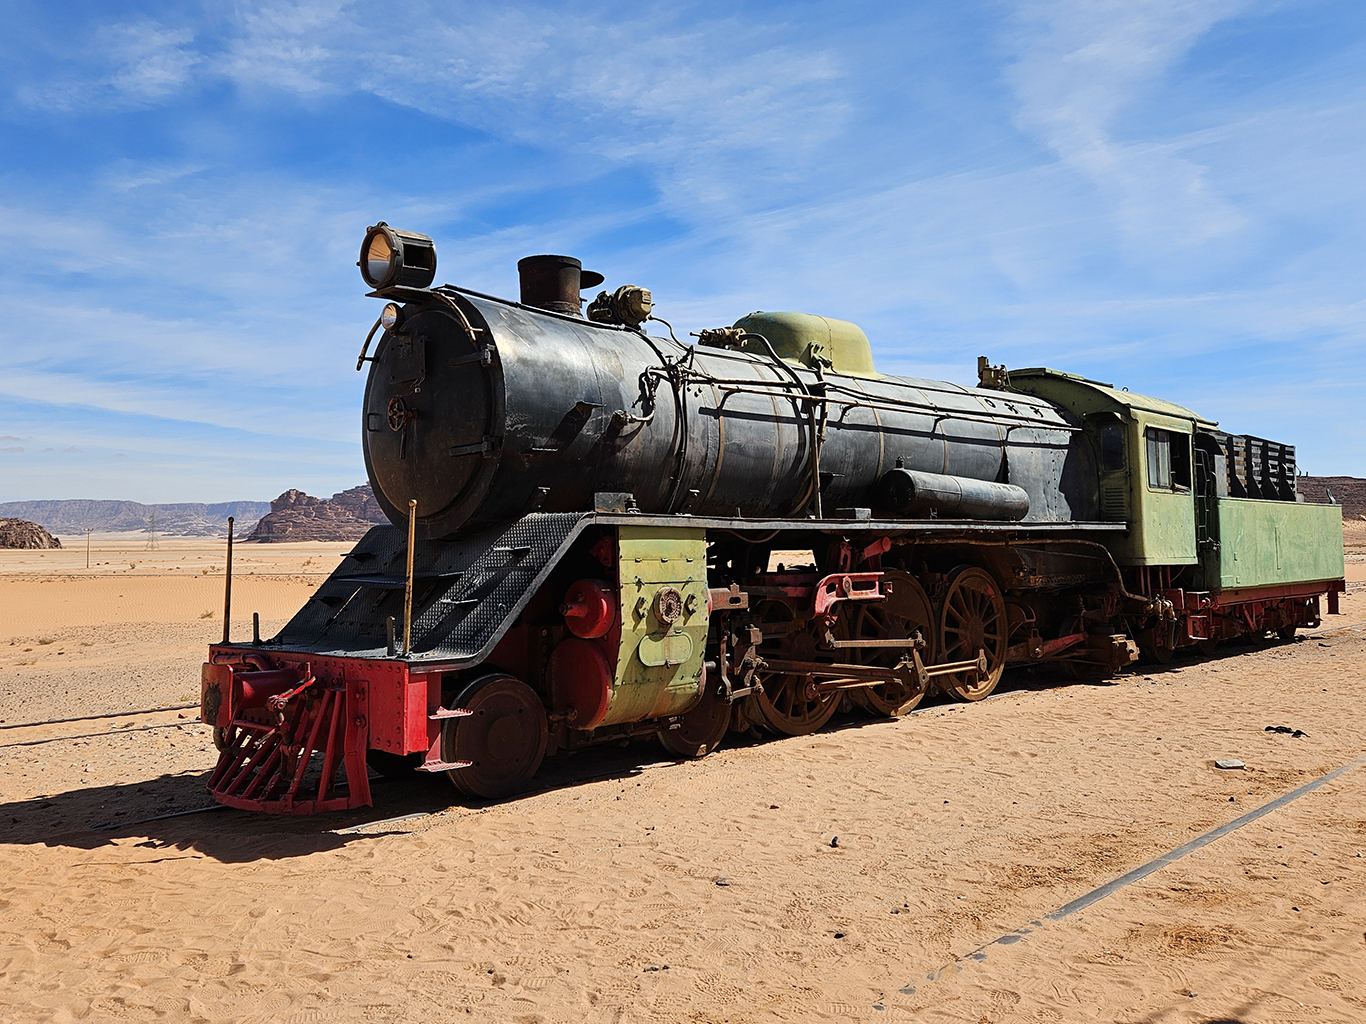 Železnice Hedžaz pomohla formovat moderní Blízký východ